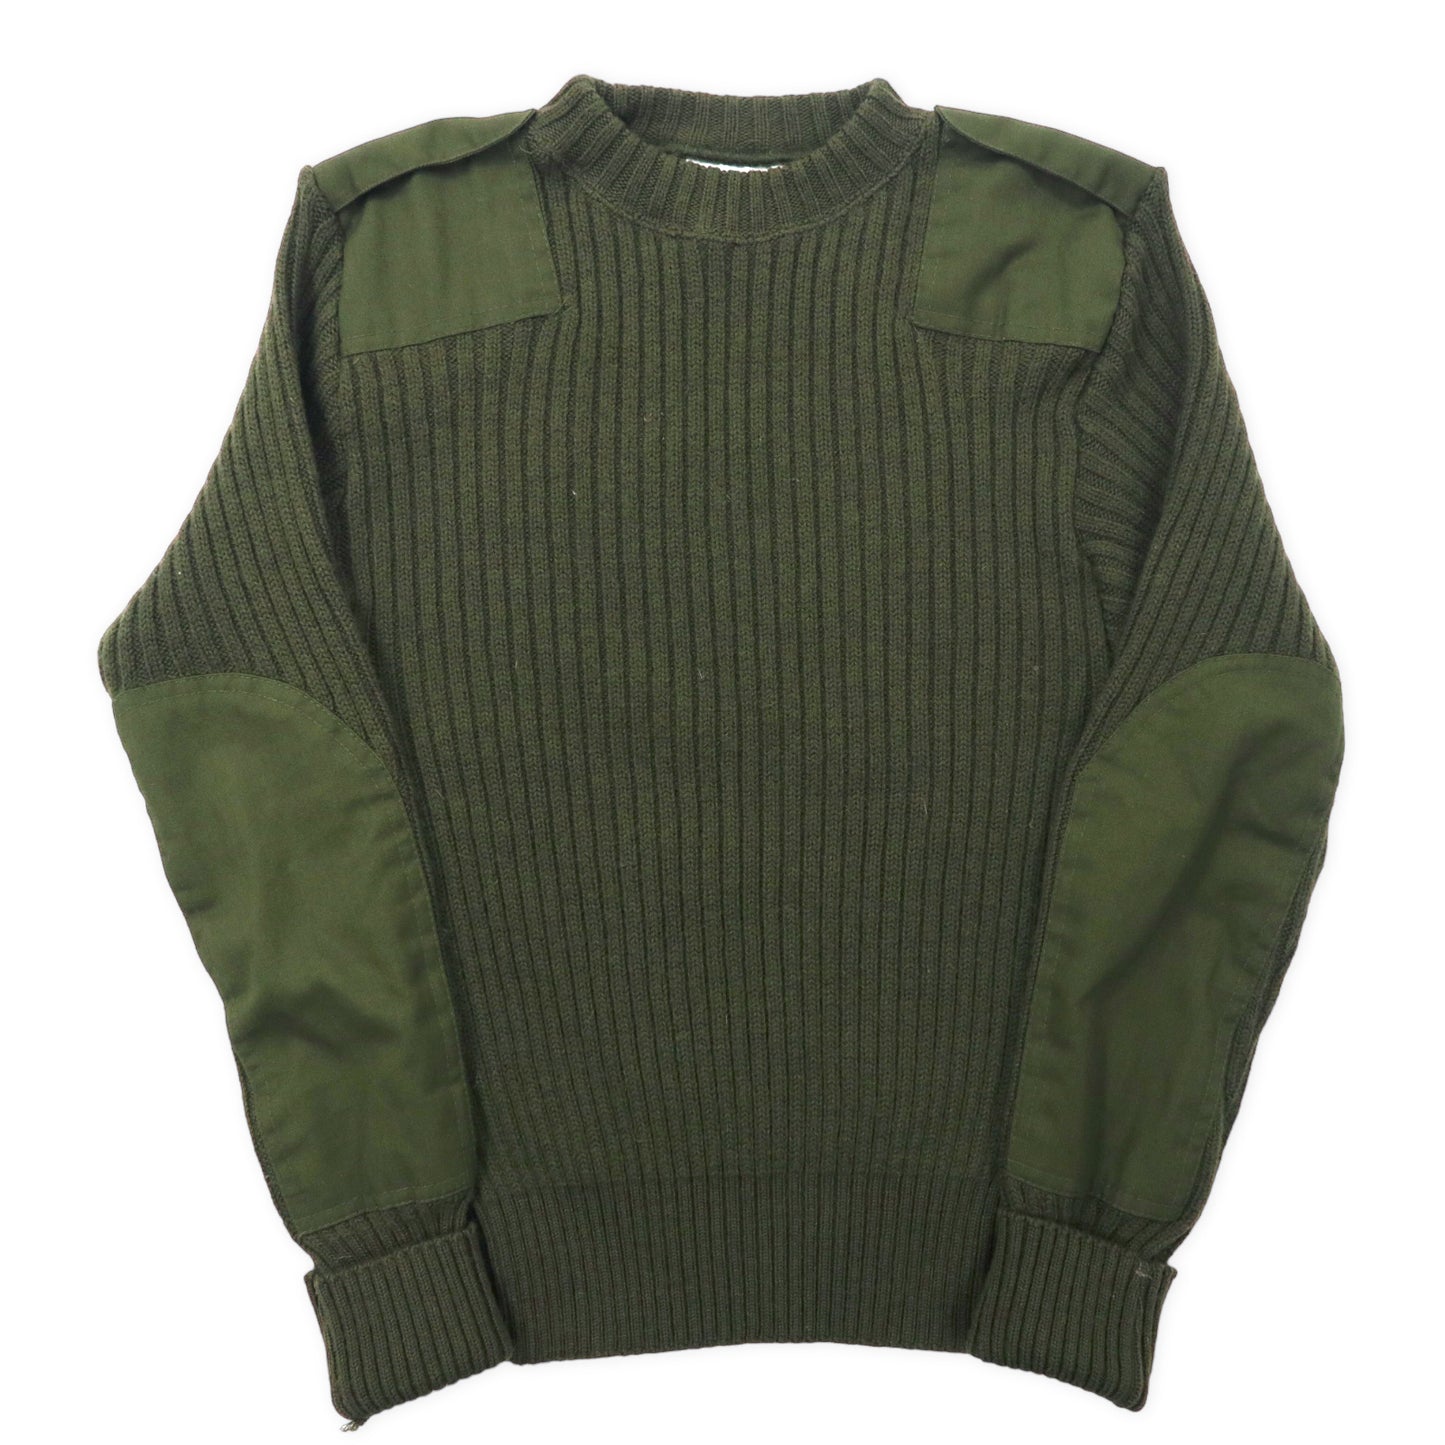 US Army Command Knit Sweater 36 KHAKI Wool Military DSCP